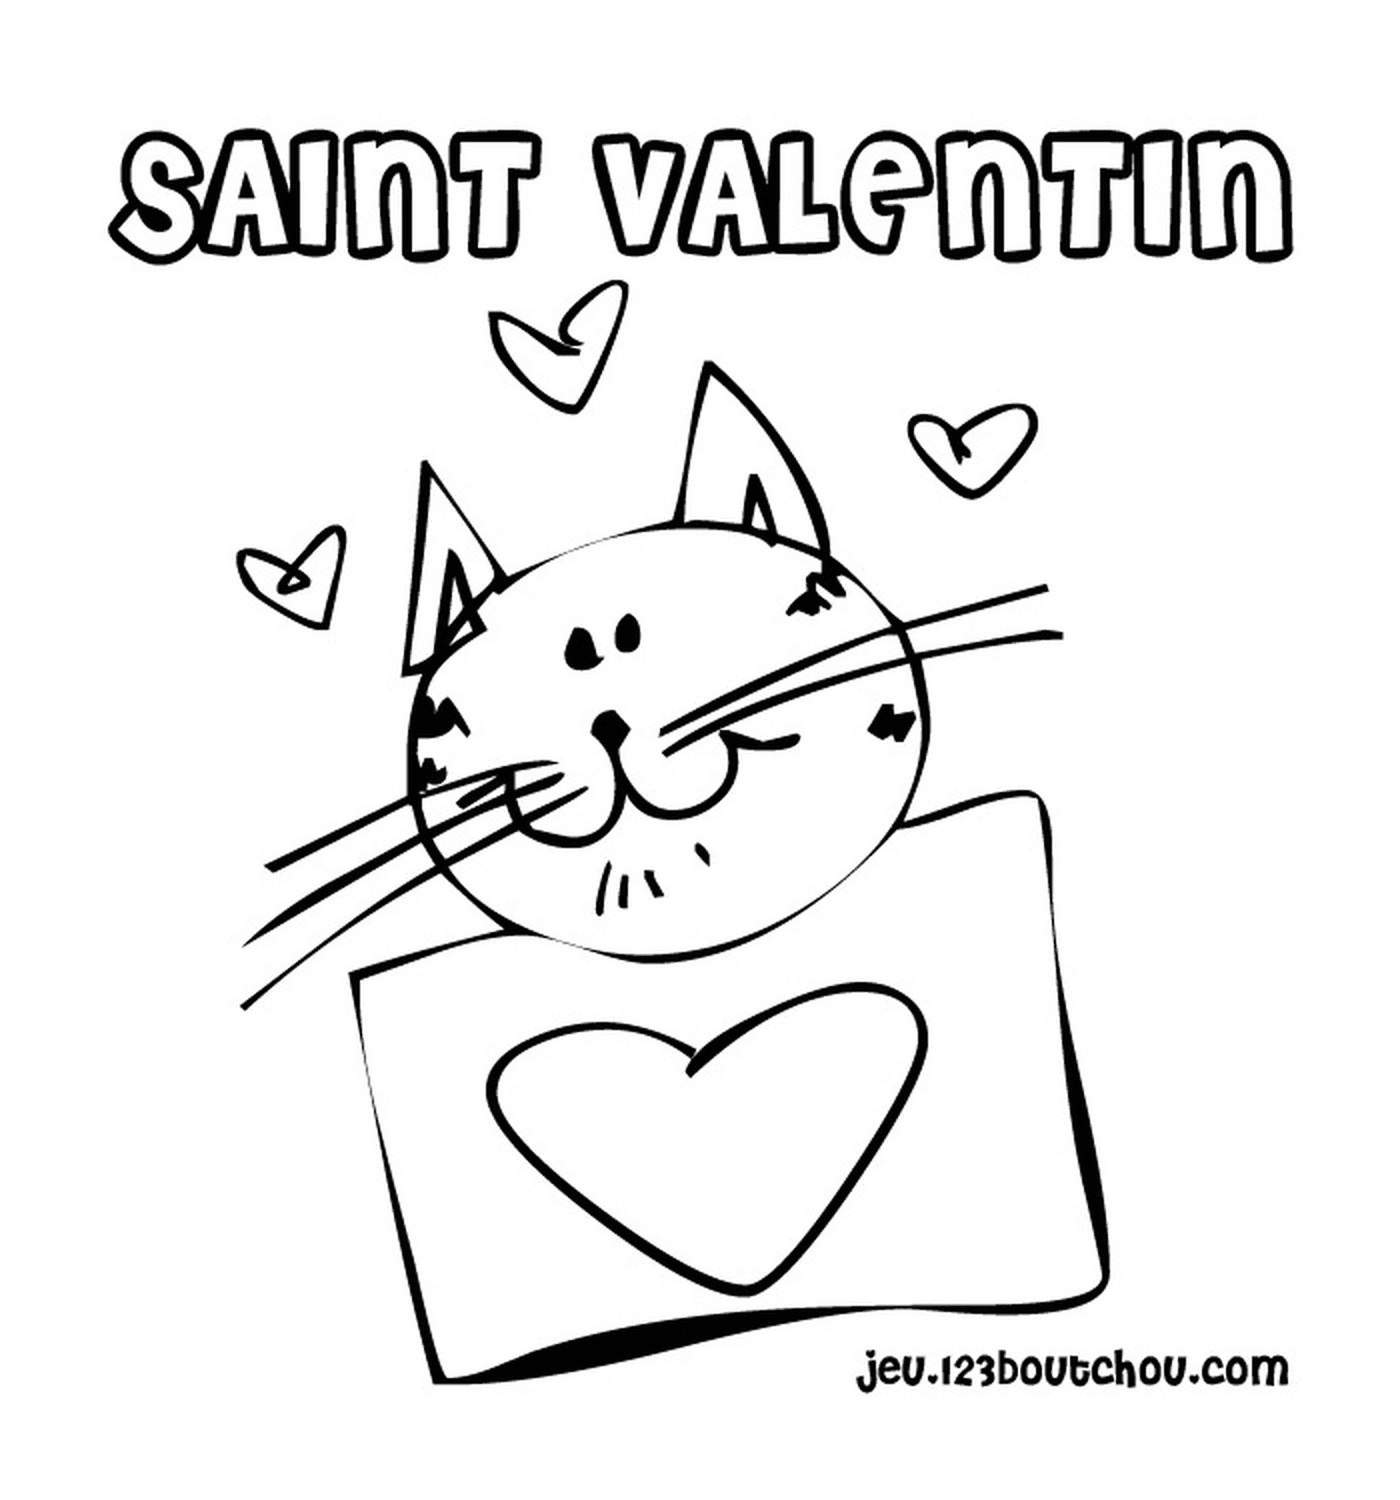   Saint-Valentin, chat avec cœurs 